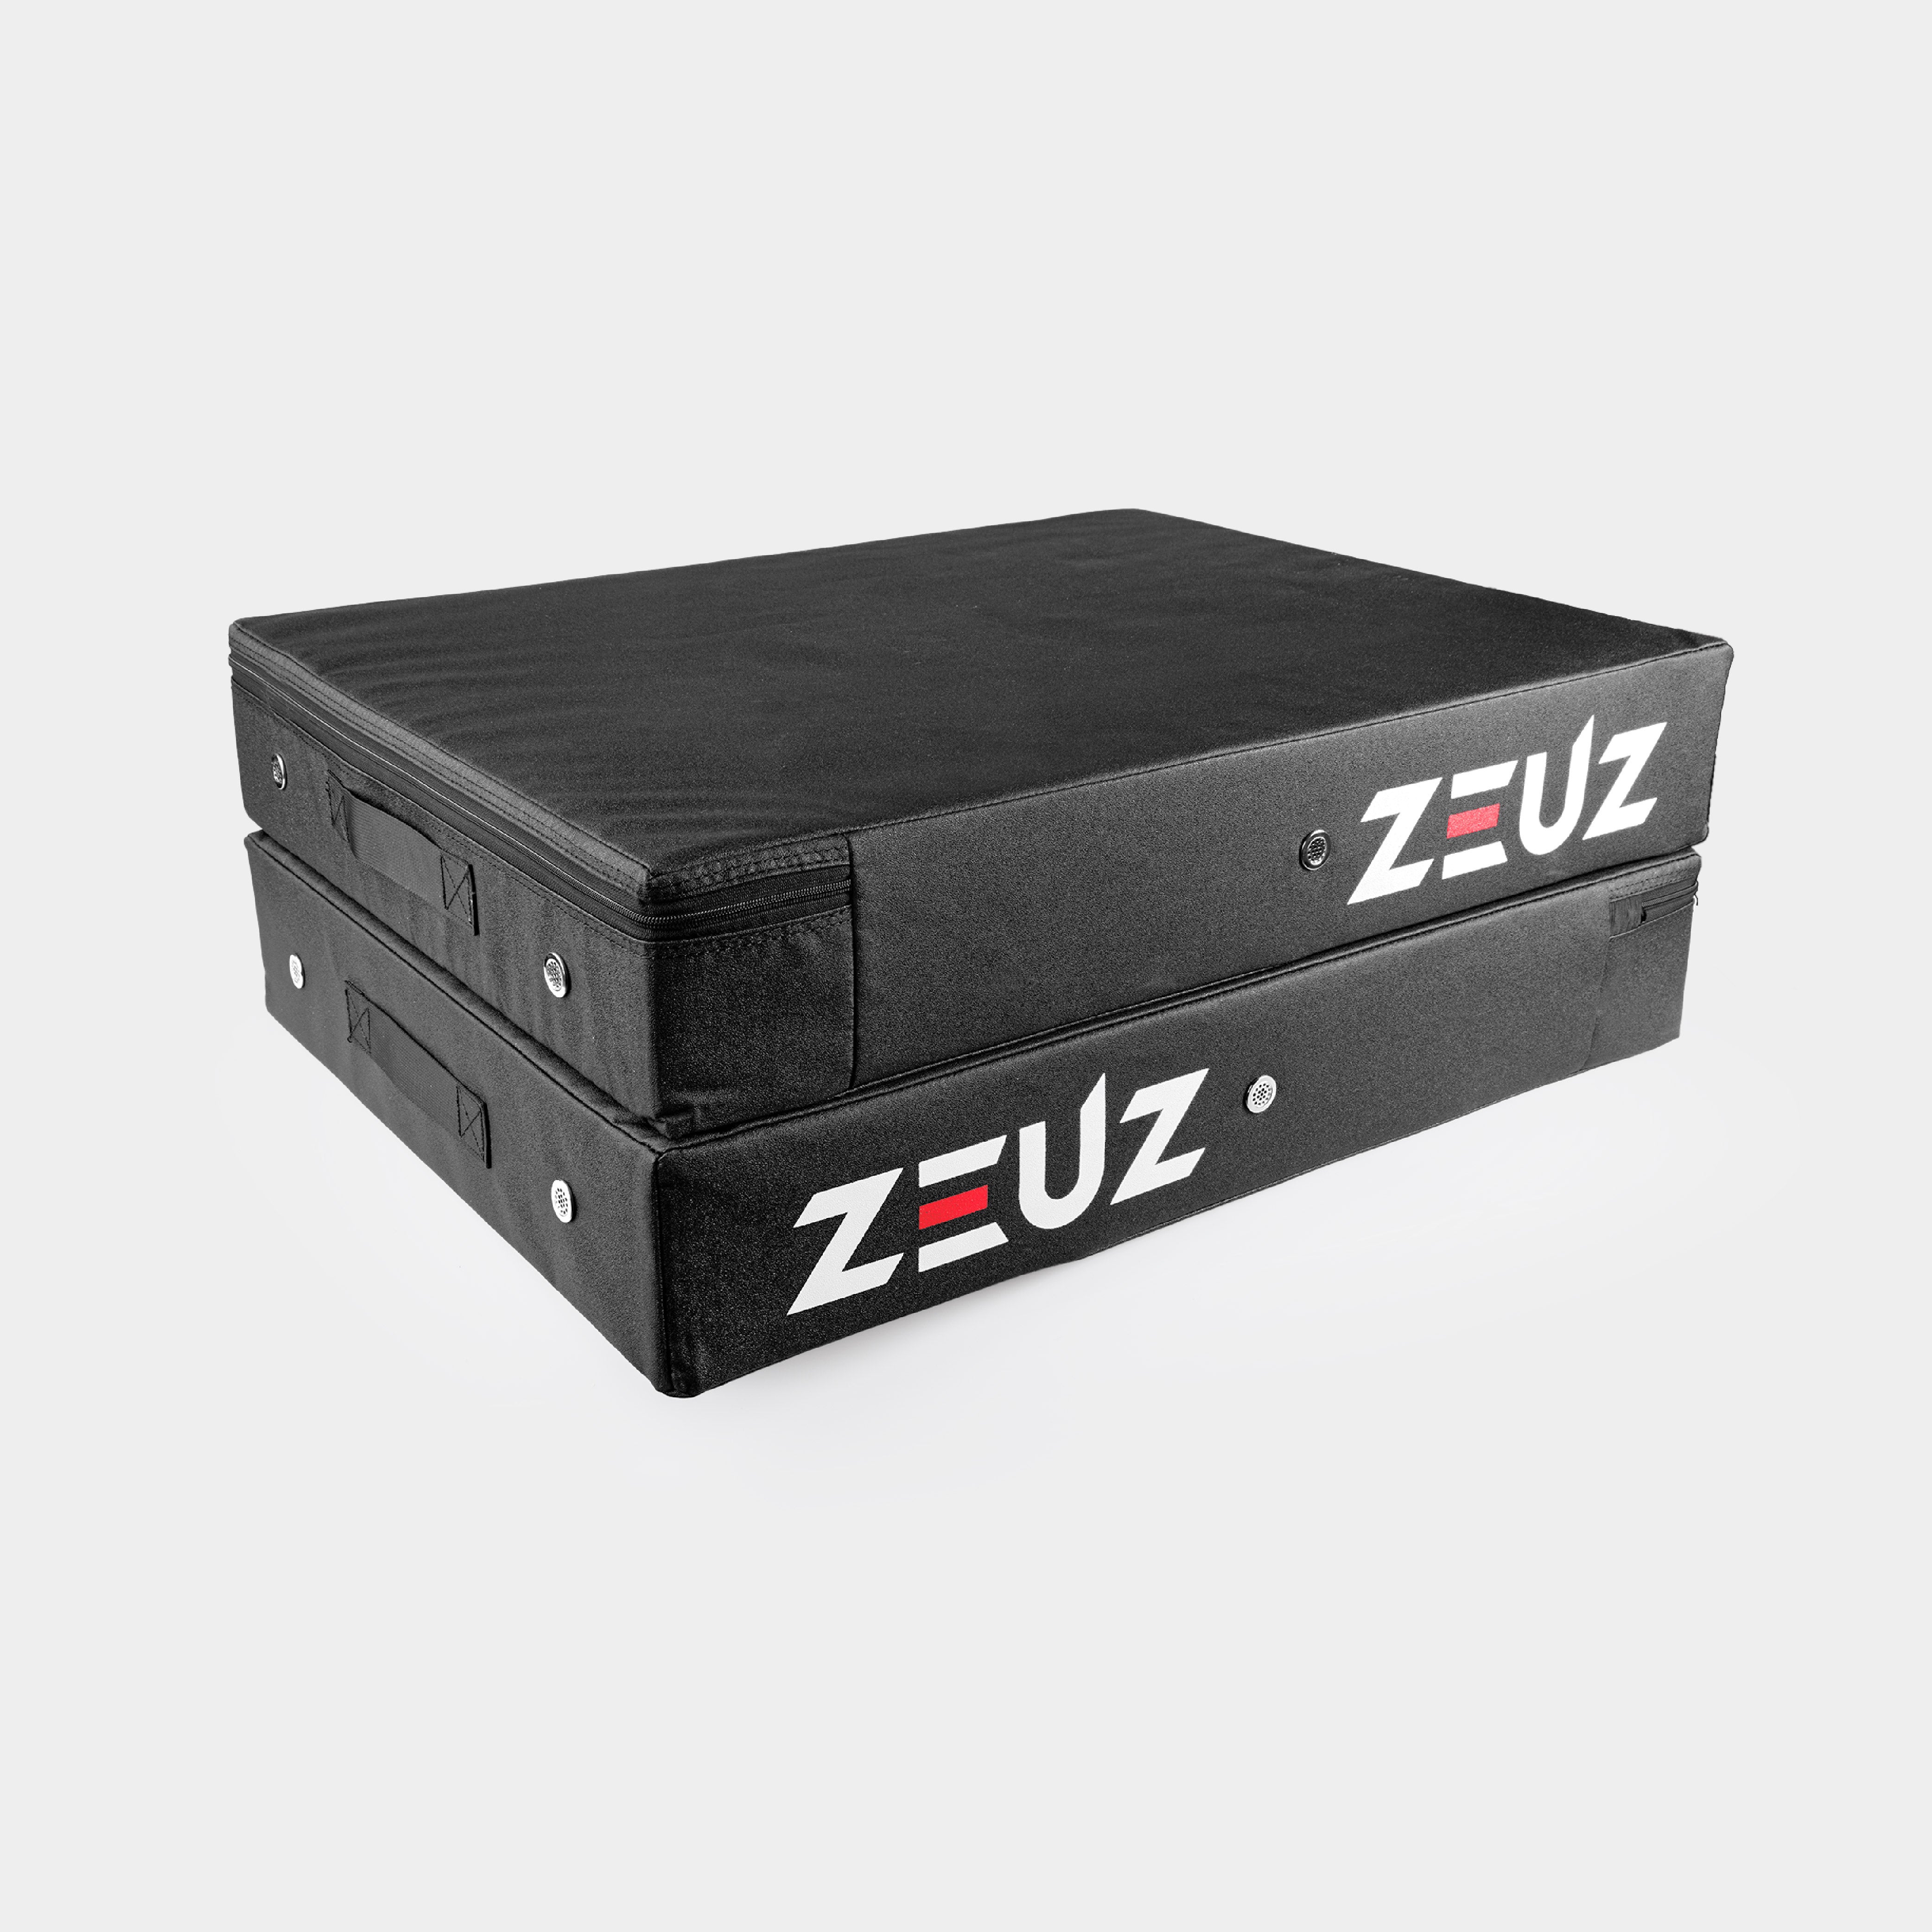 ZEUZ Drop Pad Set - 2 Stück - Crash Pad